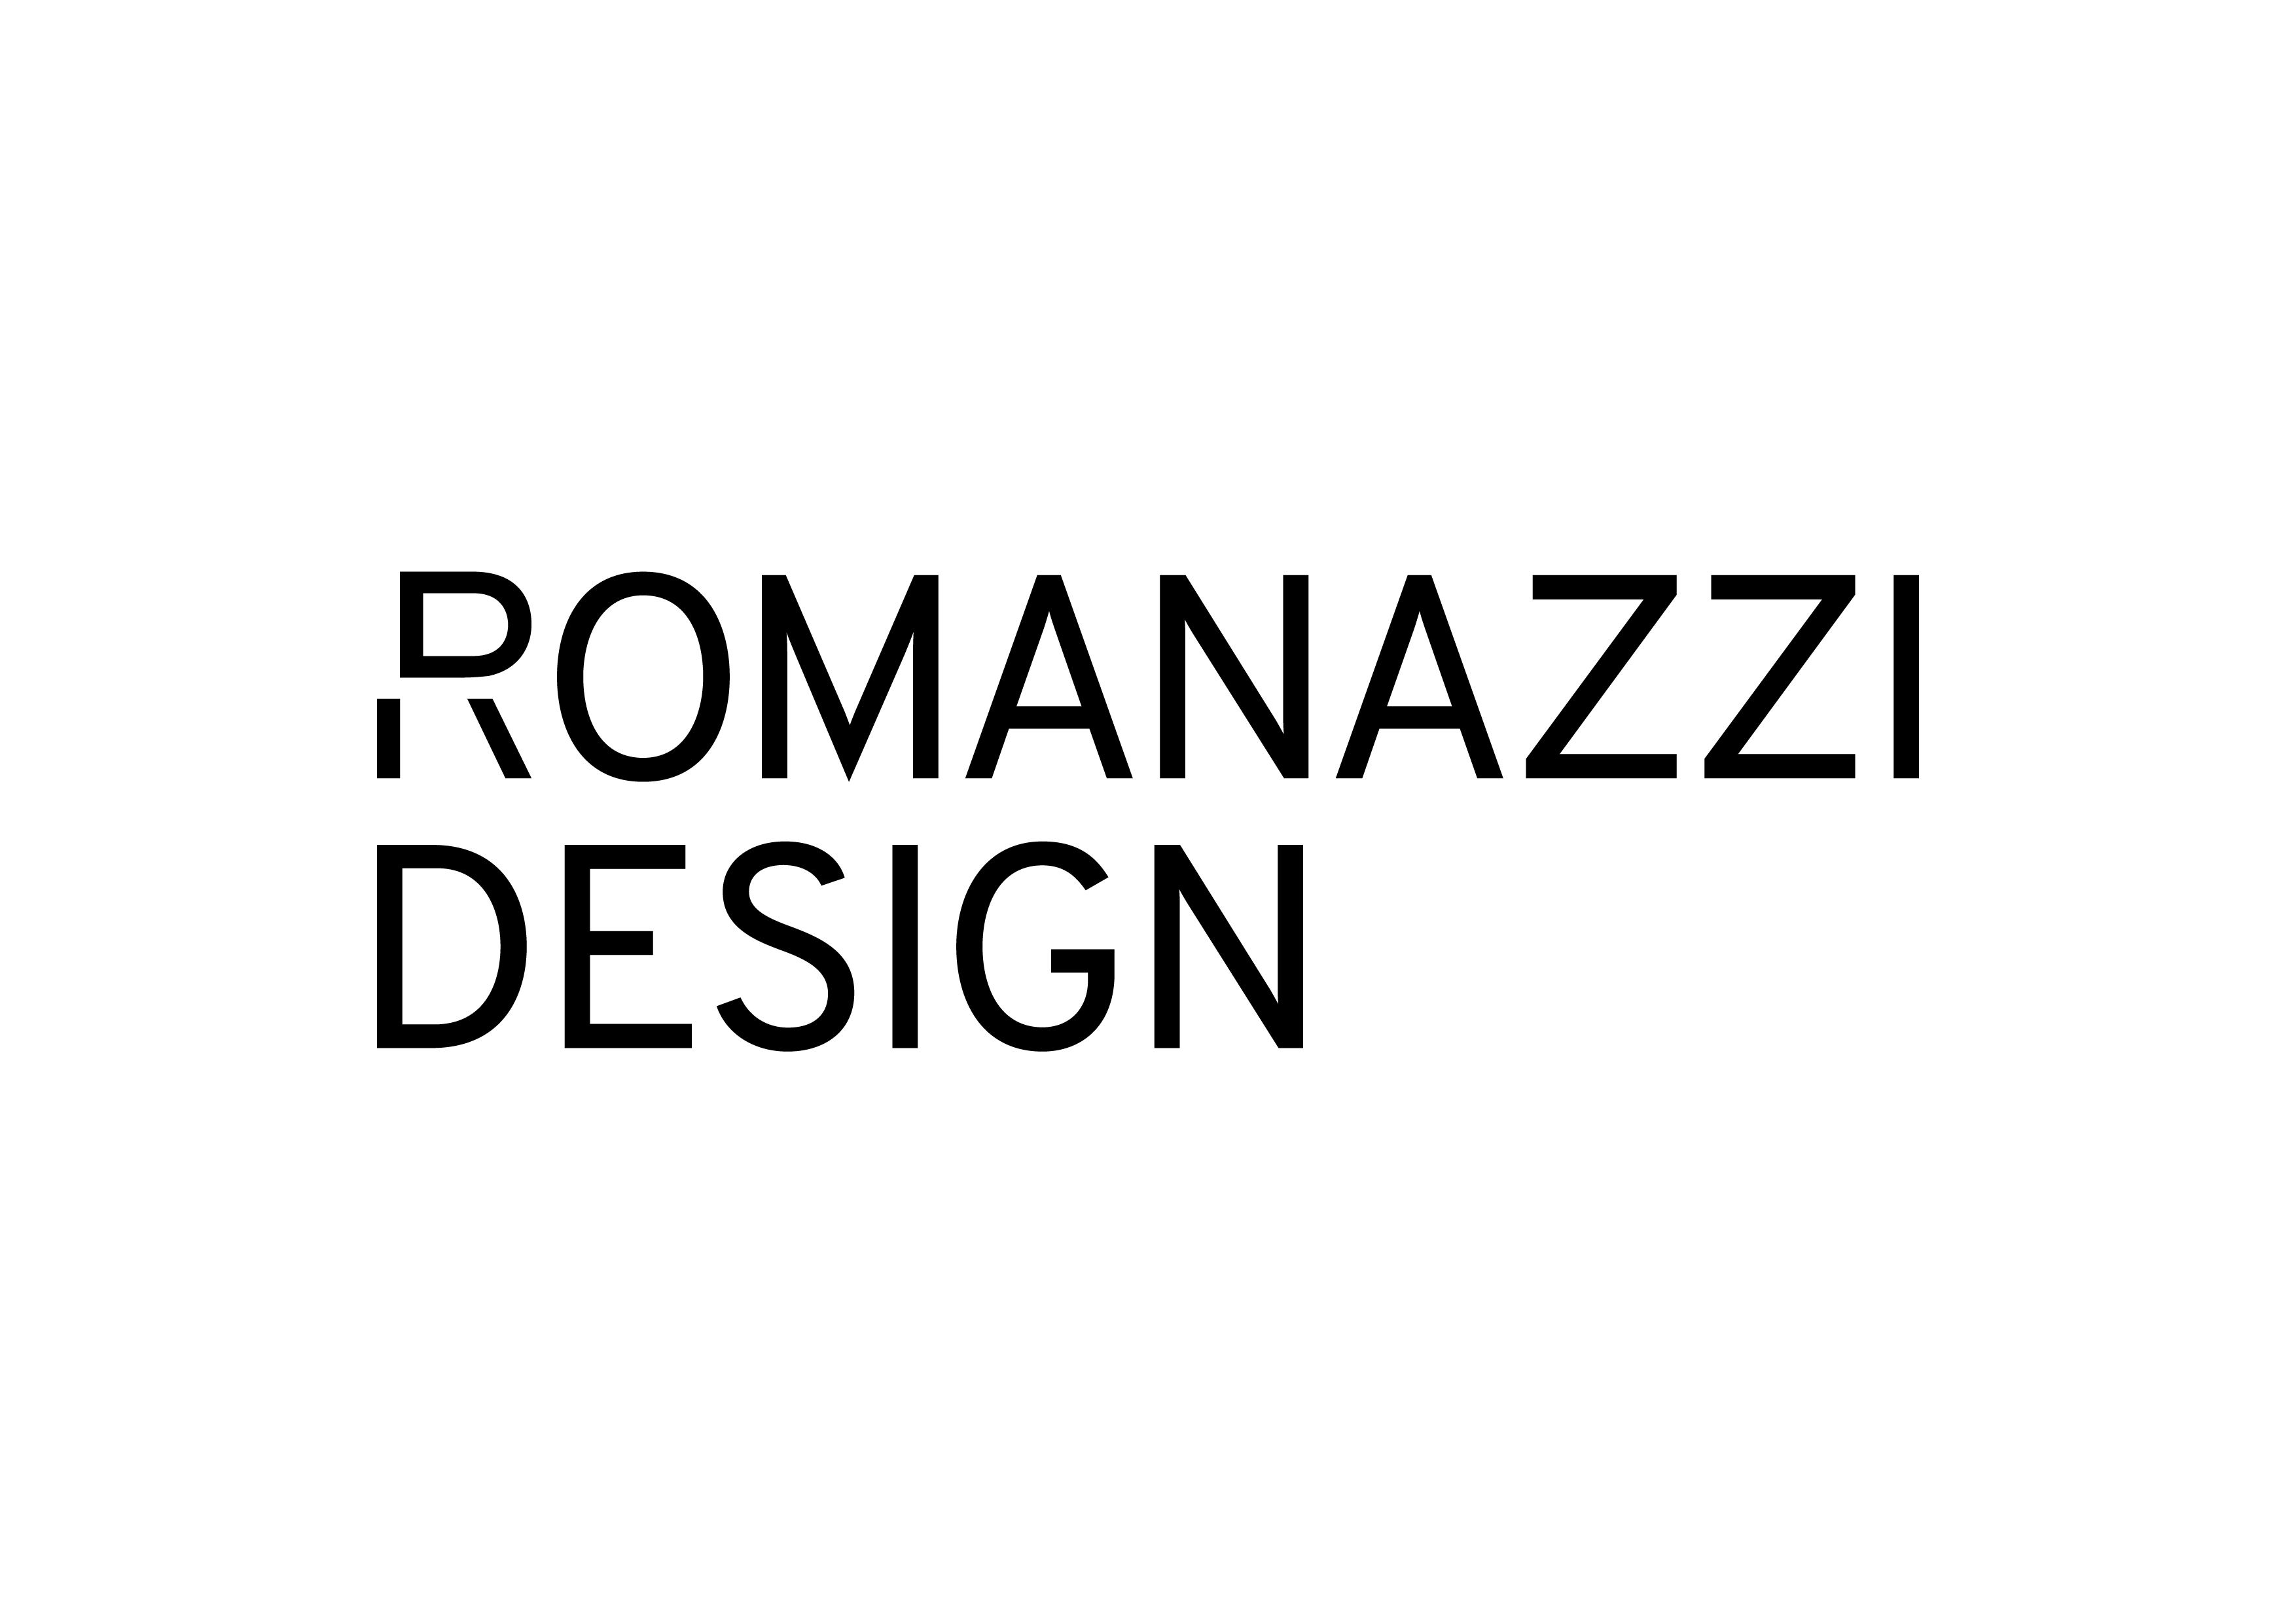 Romanazzi Design